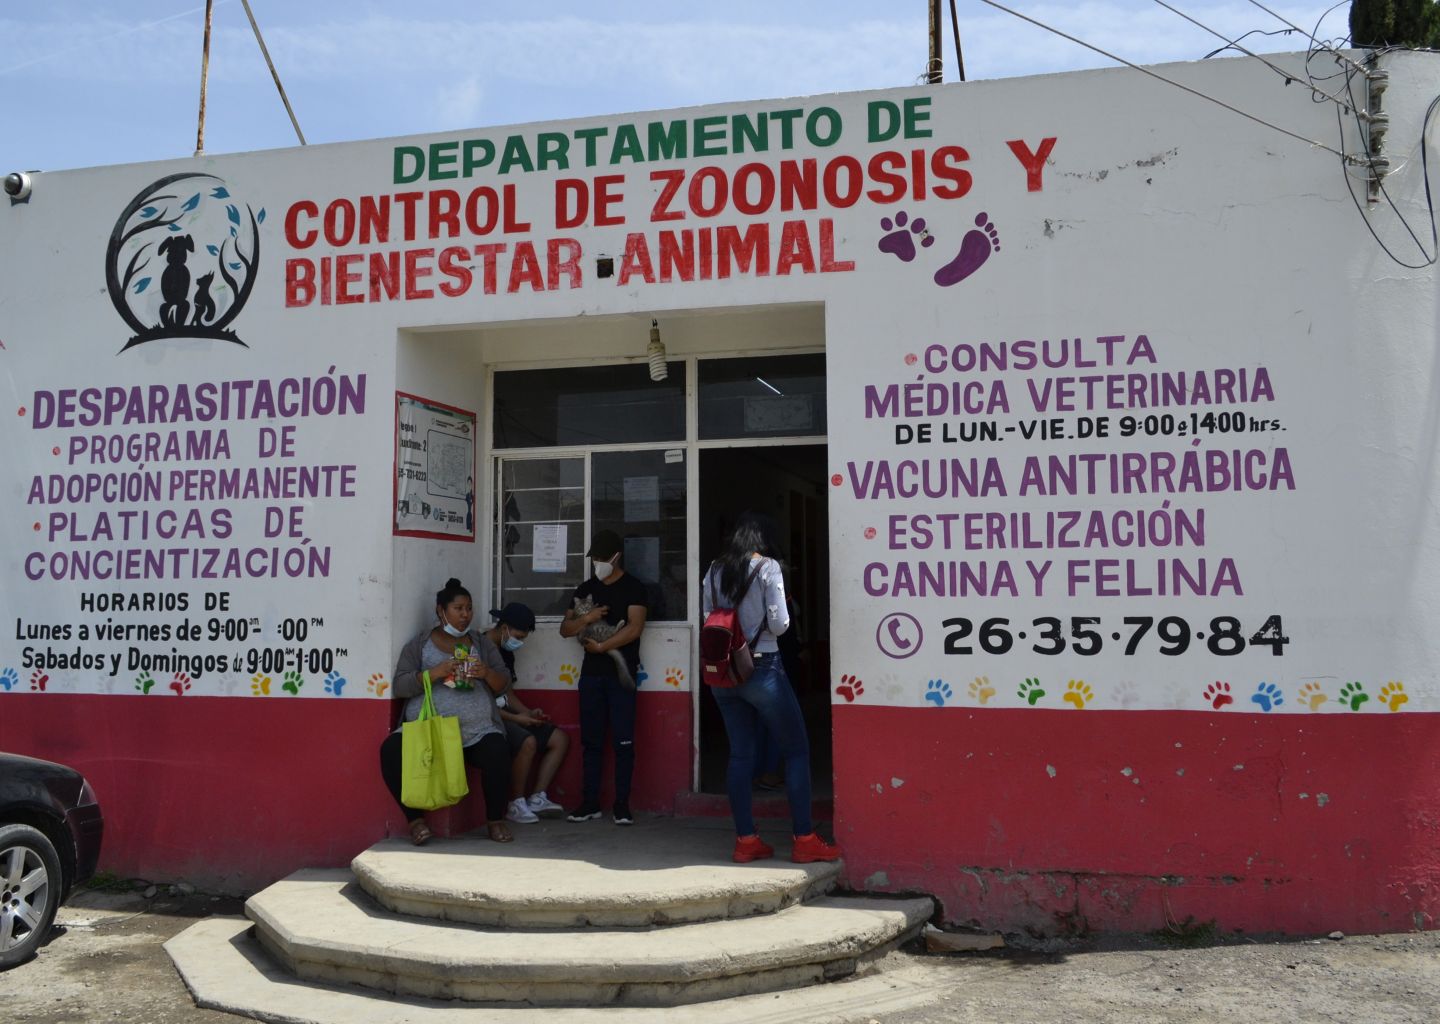 Zoonosis Chimalhuacán implementa acciones para reforzar el cuidado de mascotas